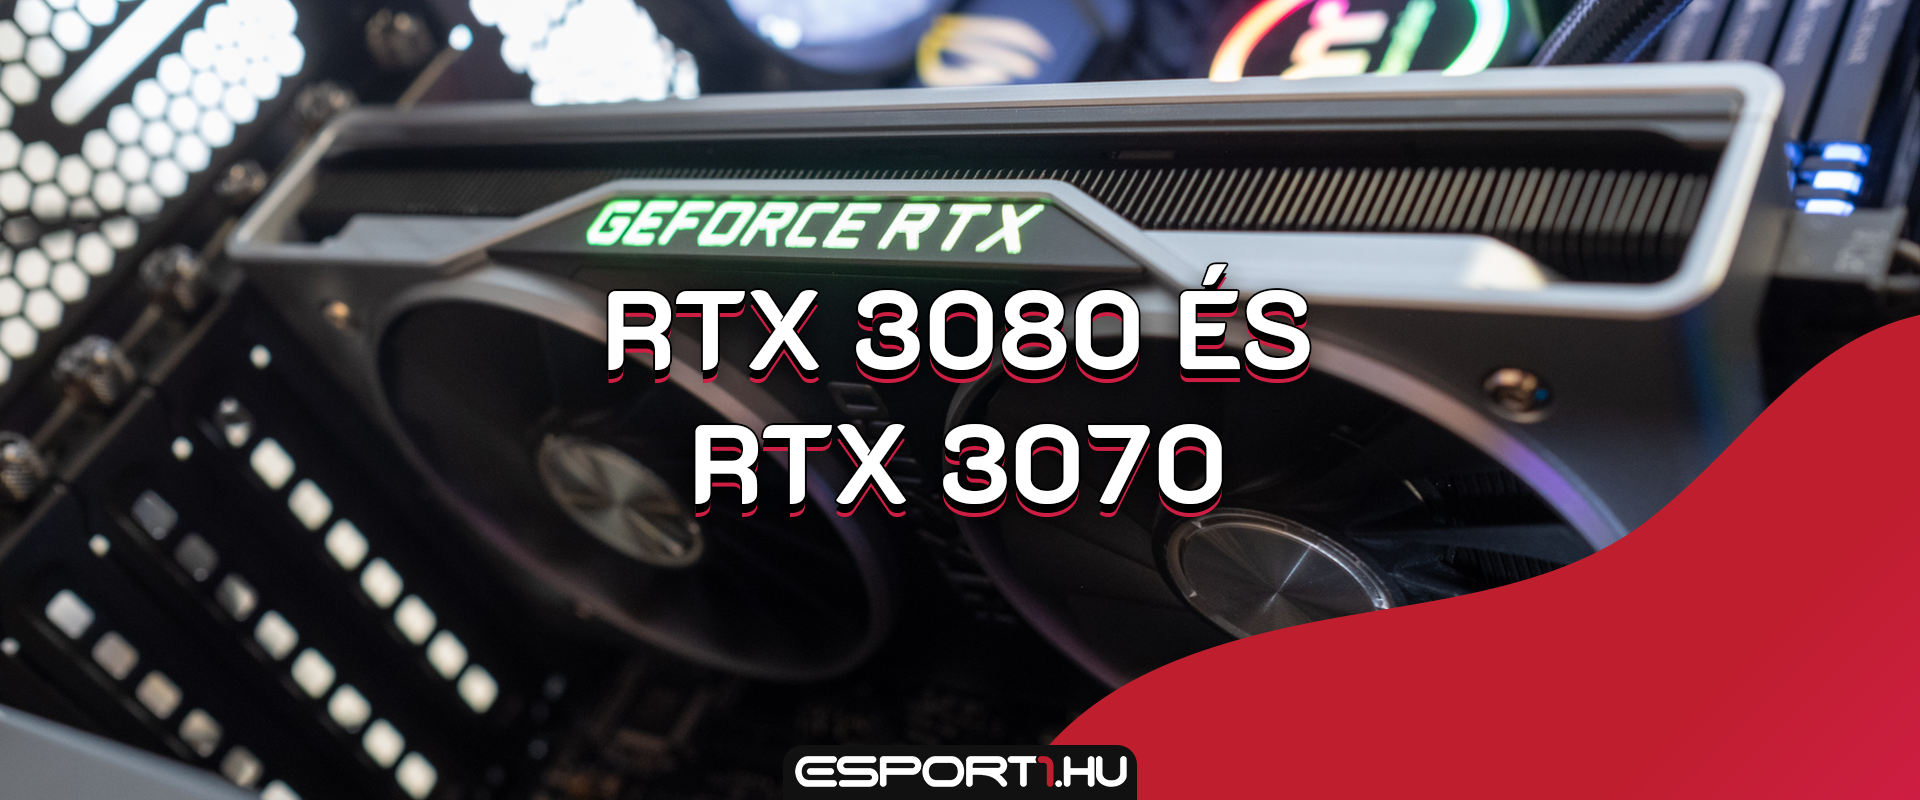 Hogy mennyi: 20 GB memóriával érkezhet a GeForce RTX 3080